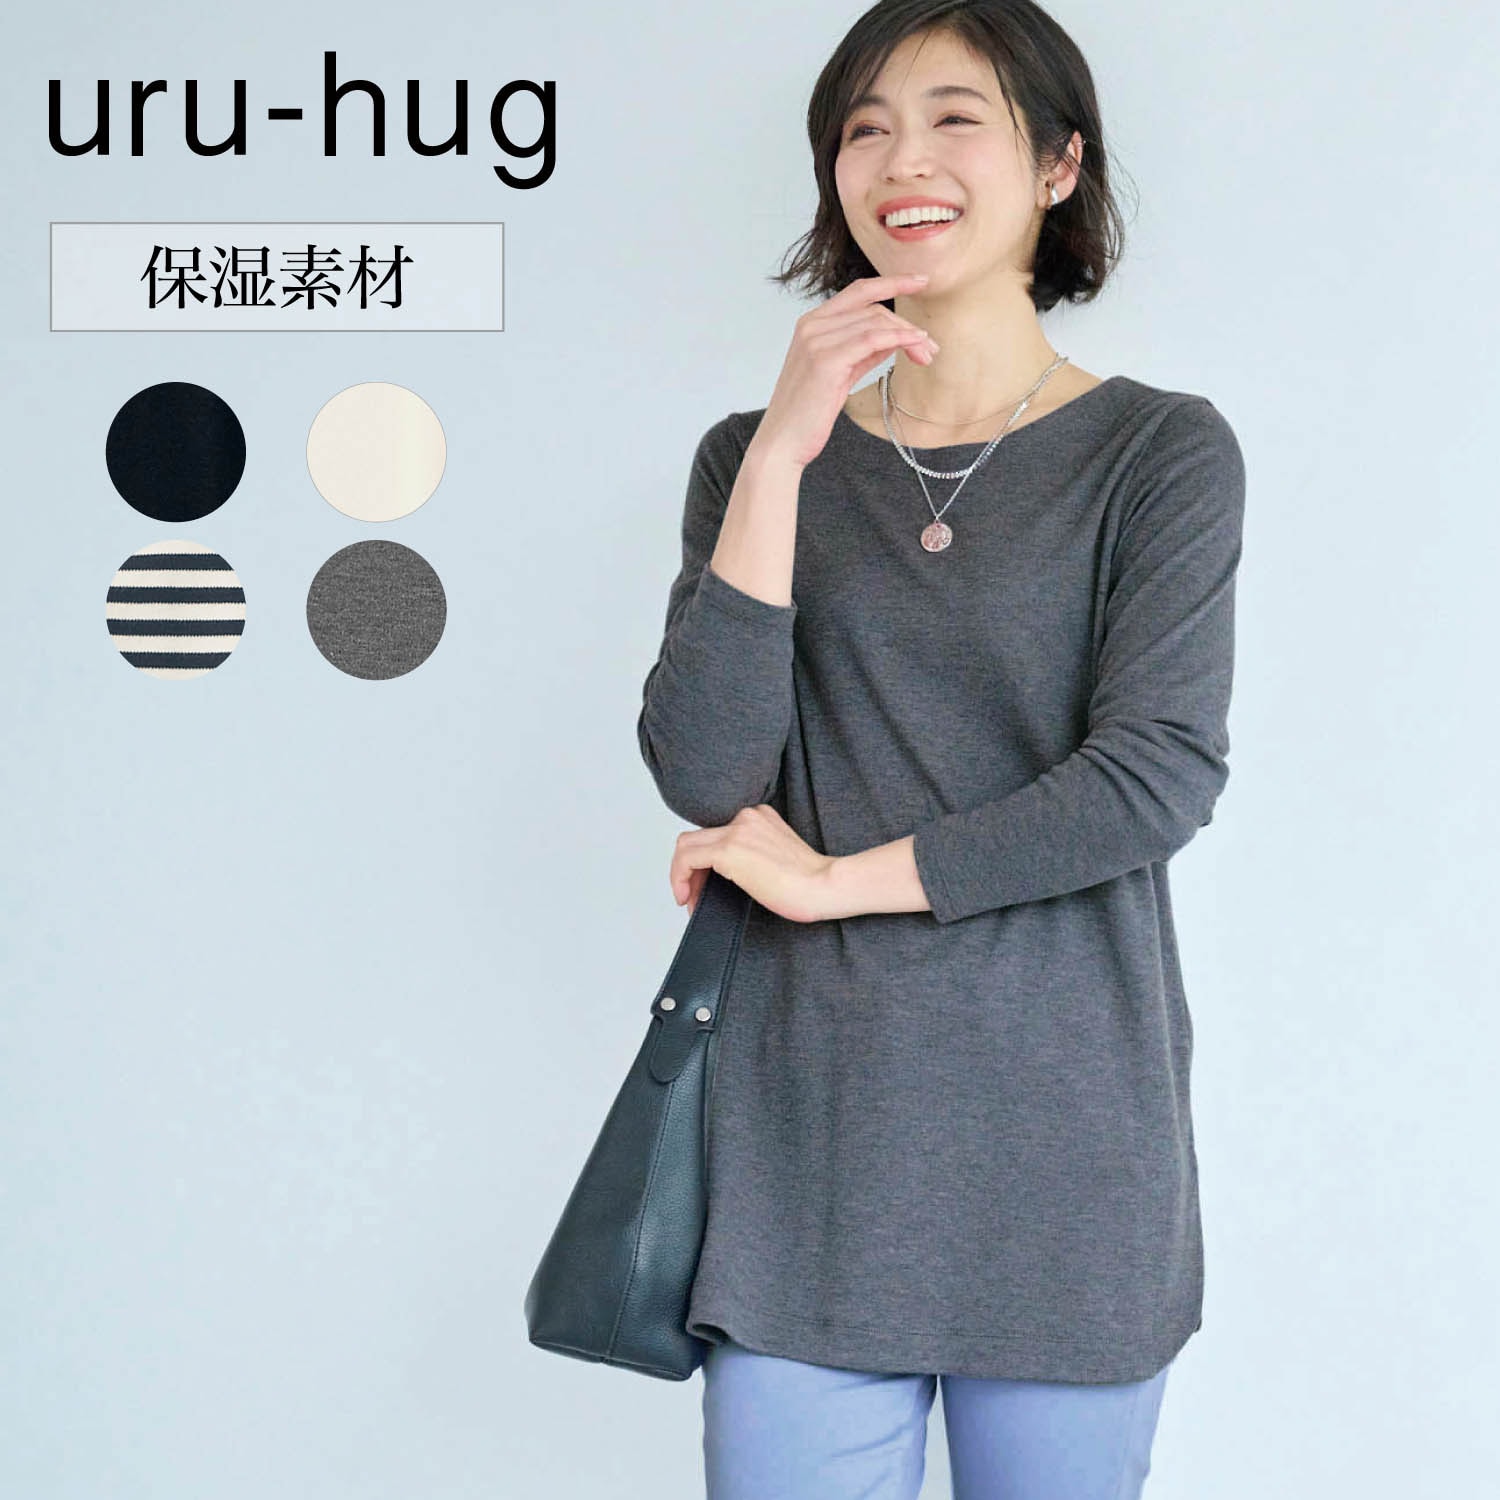 【ウルハグ/uru-hug】保湿素材の綿混カットソーチュニック (LL~6L)画像